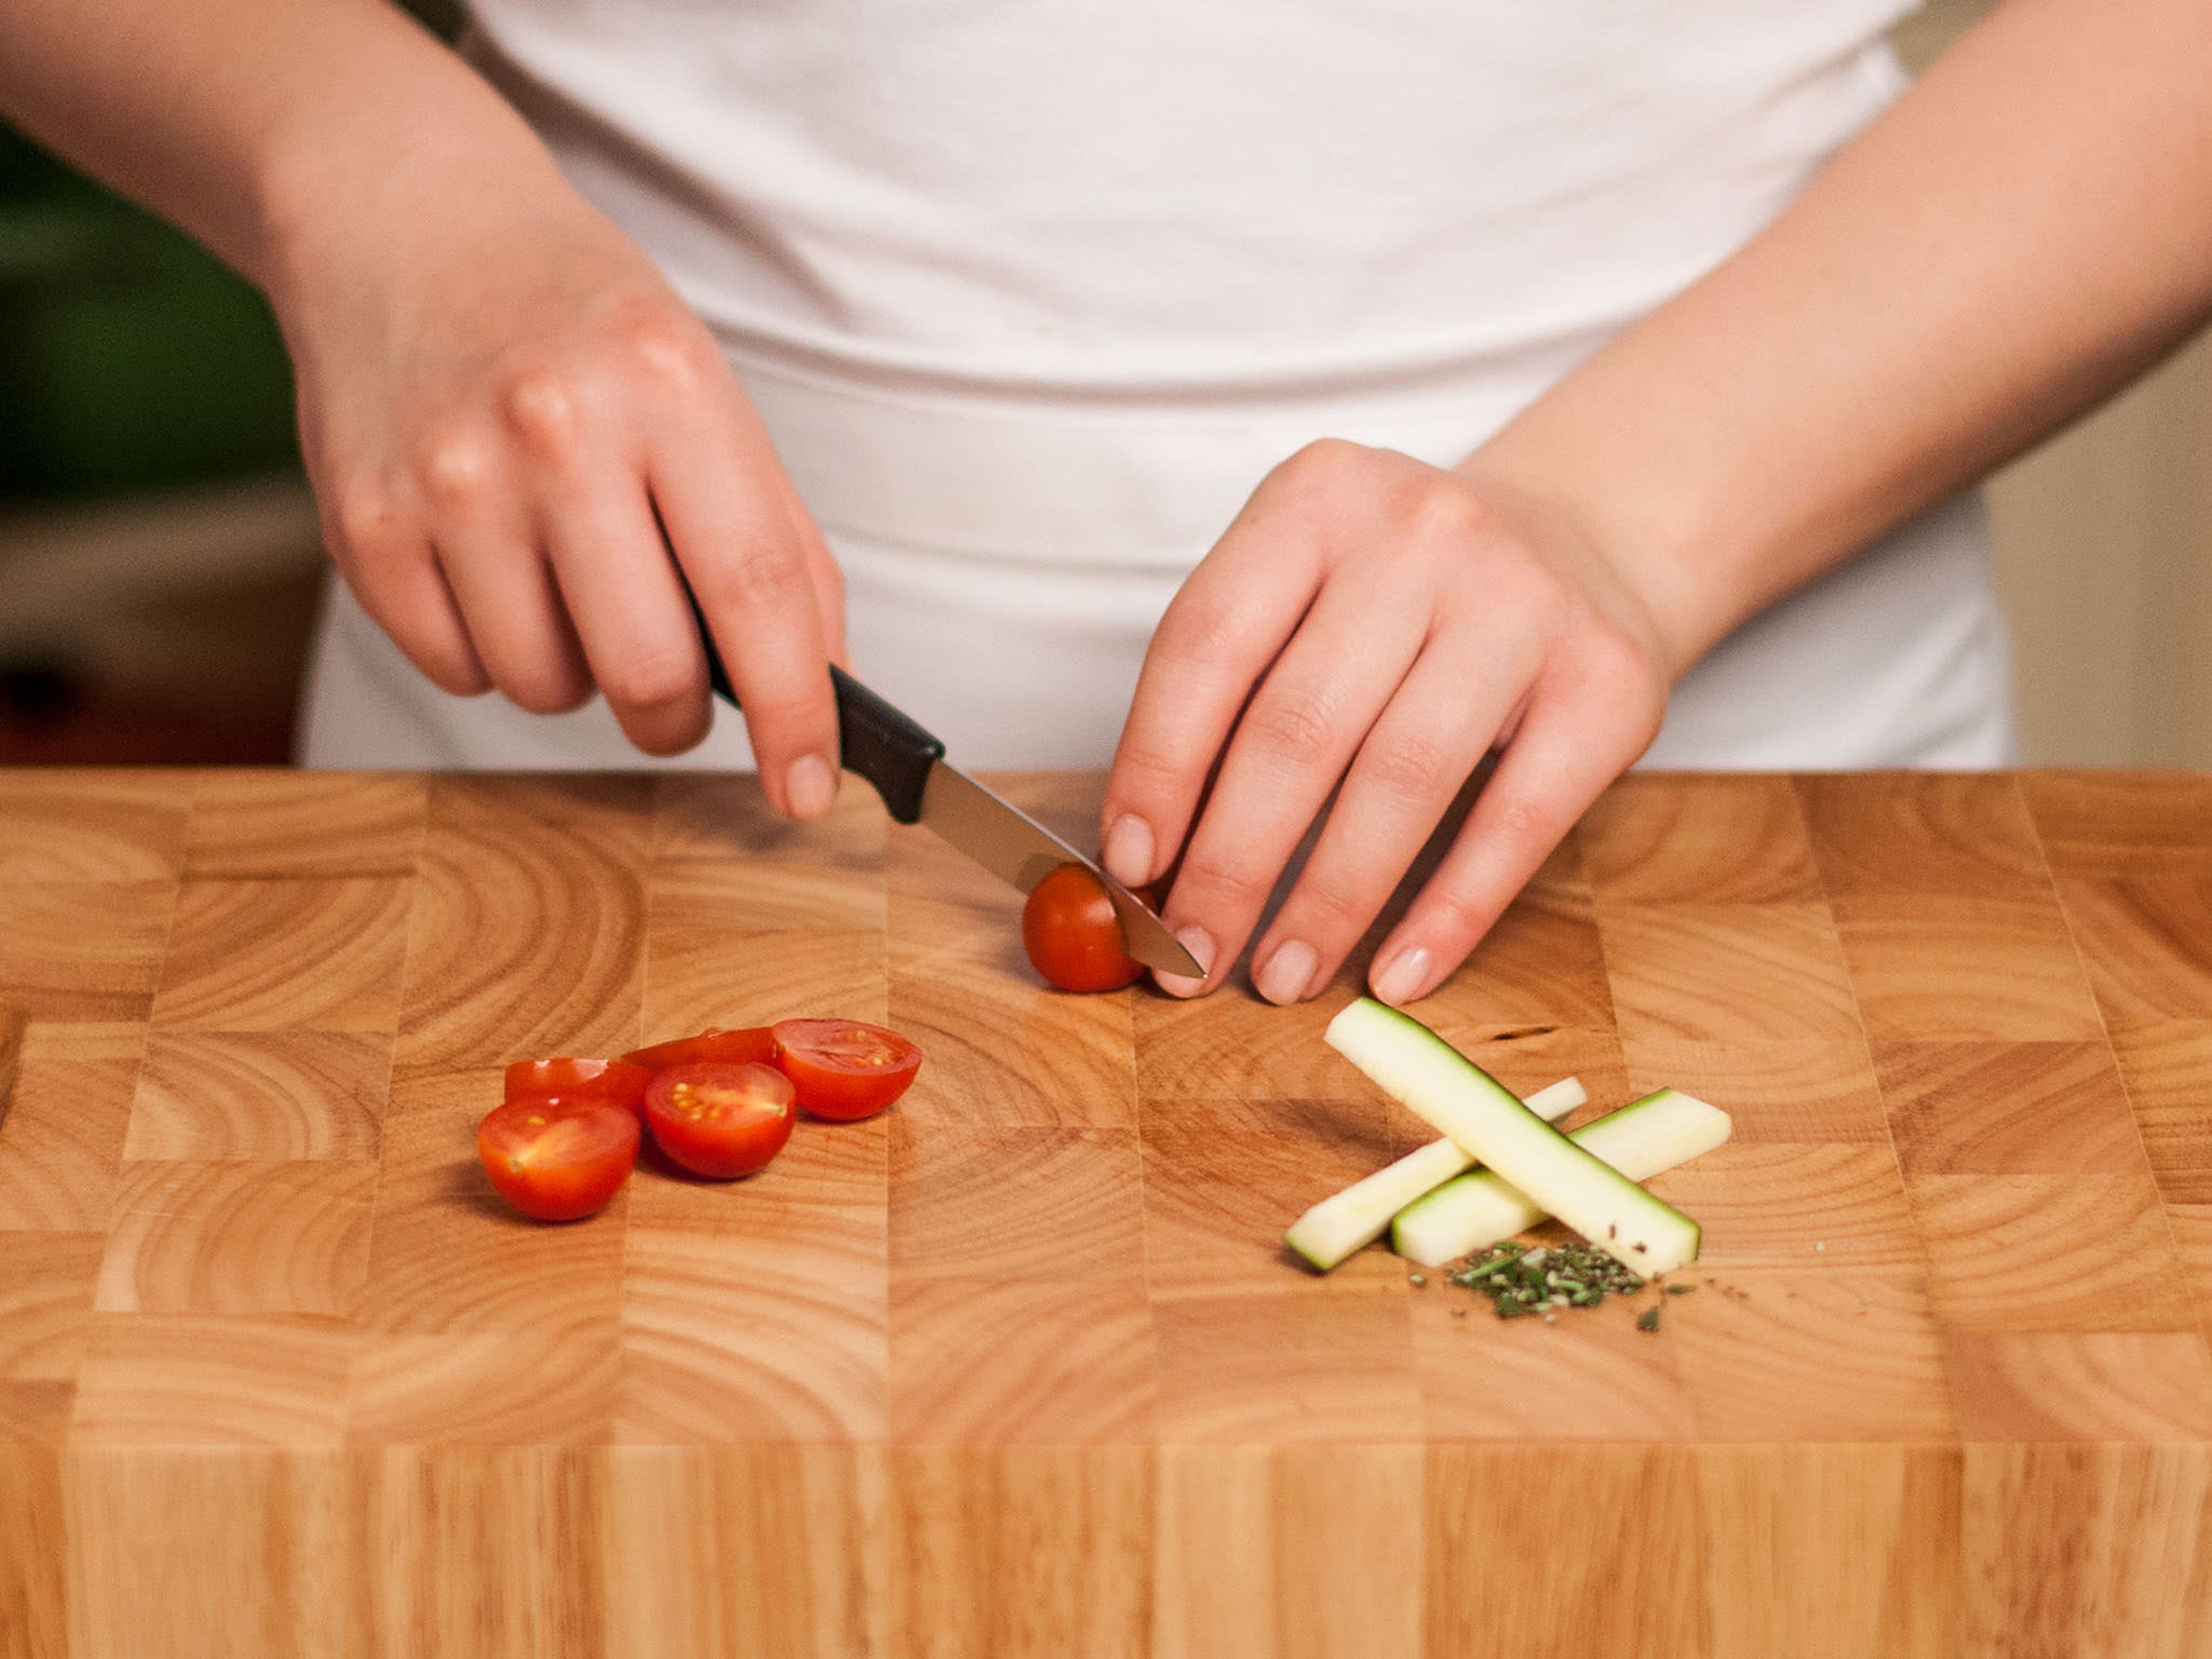 Zucchini halbieren und in Sticks schneiden. Rosmarin fein hacken und Tomaten halbieren.